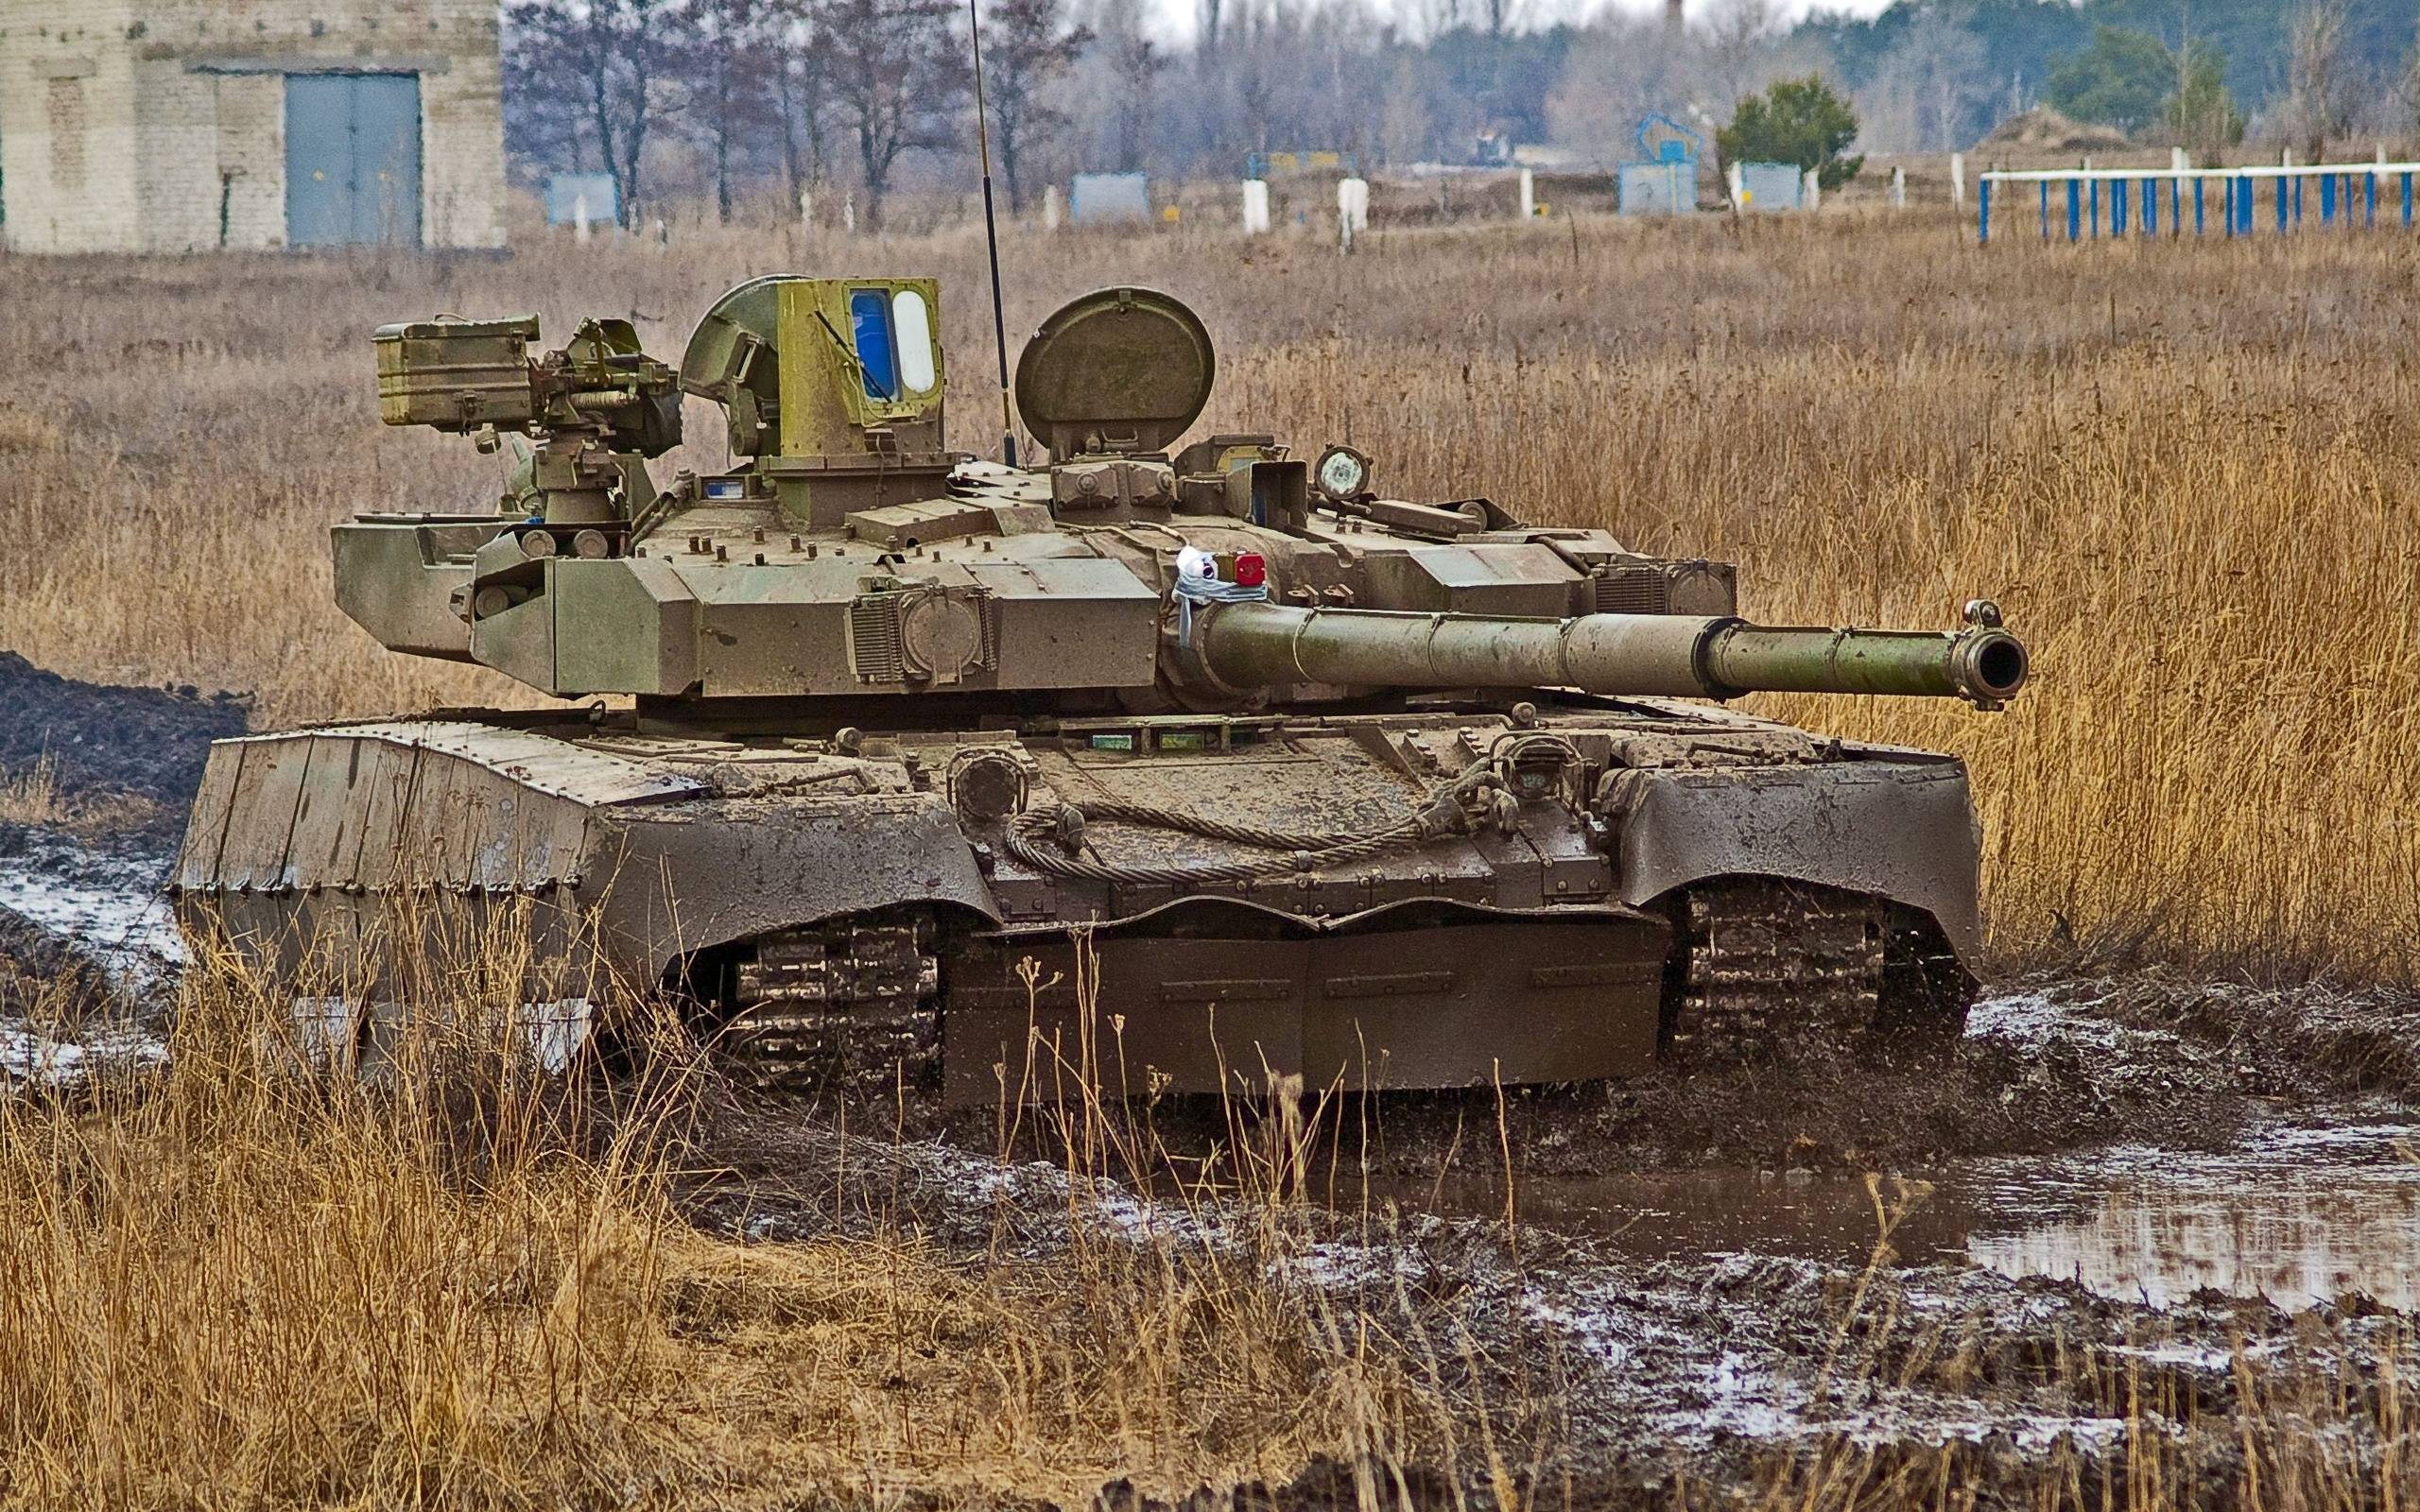 Украинские танки т-64бм булат и т-84бм оплот - история создания, конструкция и вооружение, характеристики, стоимость, спавнение с аналогами